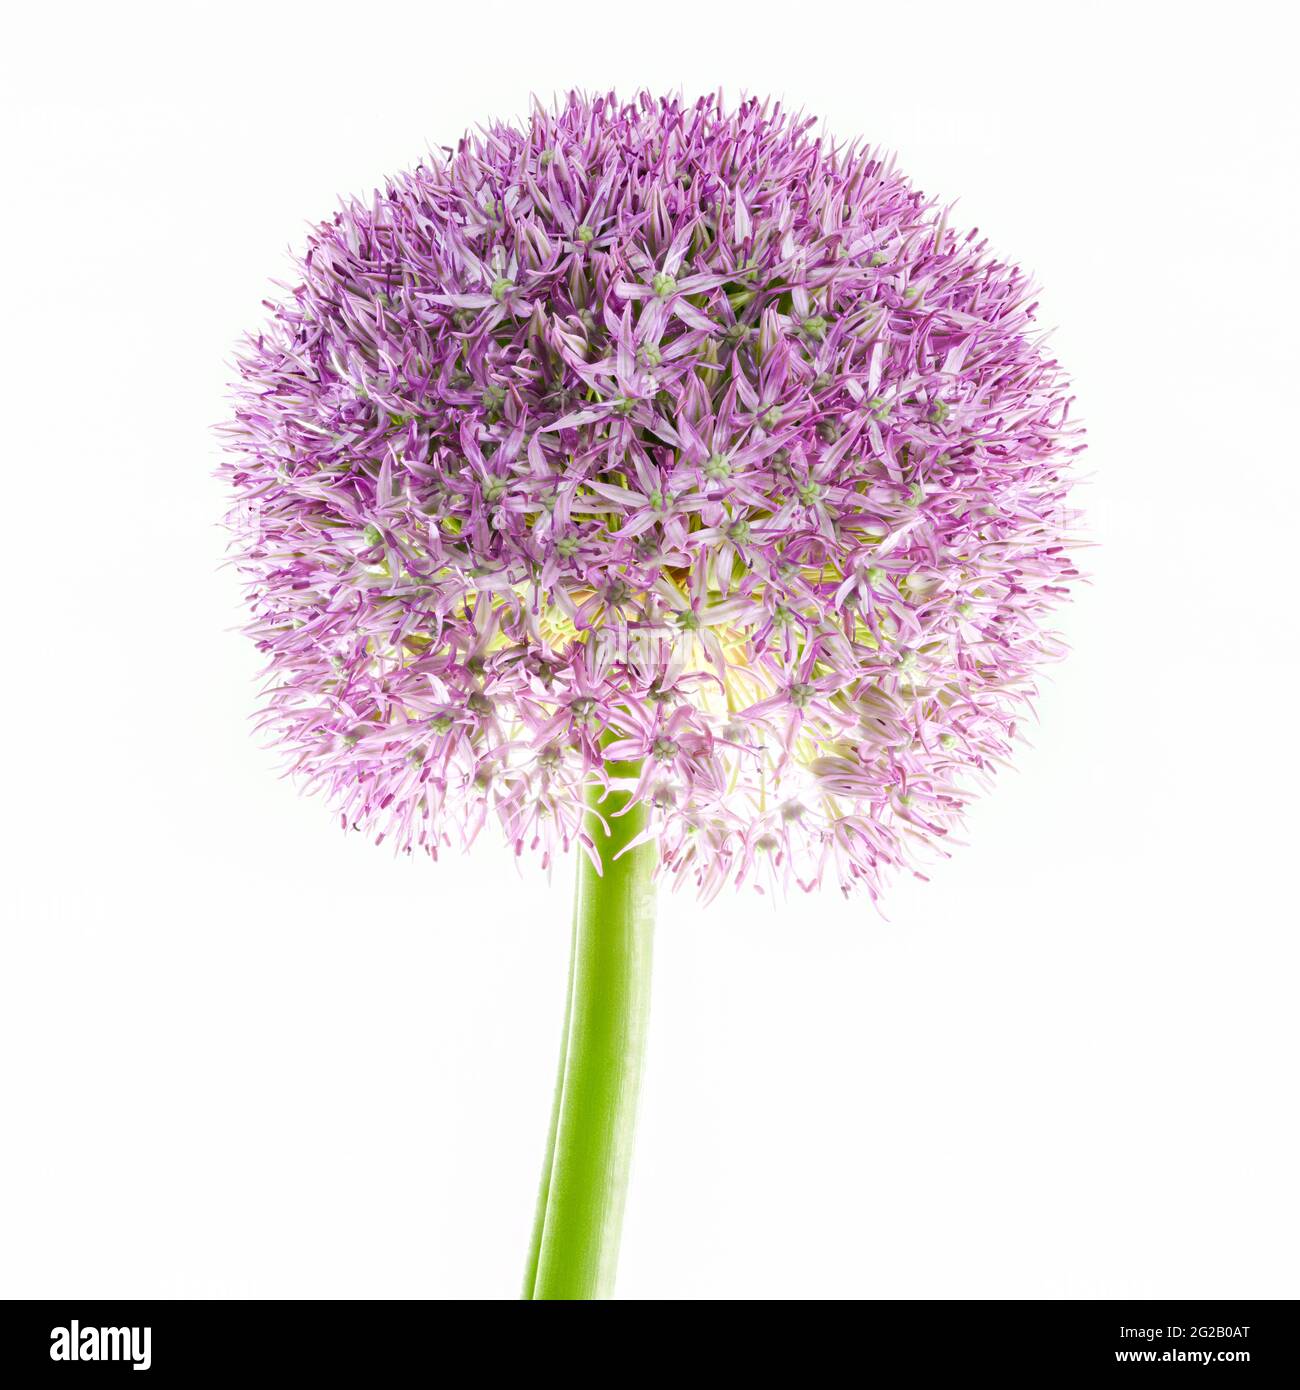 Purple Allium également connu sous le nom d'ail hollandais (Allium aflatunense) Banque D'Images